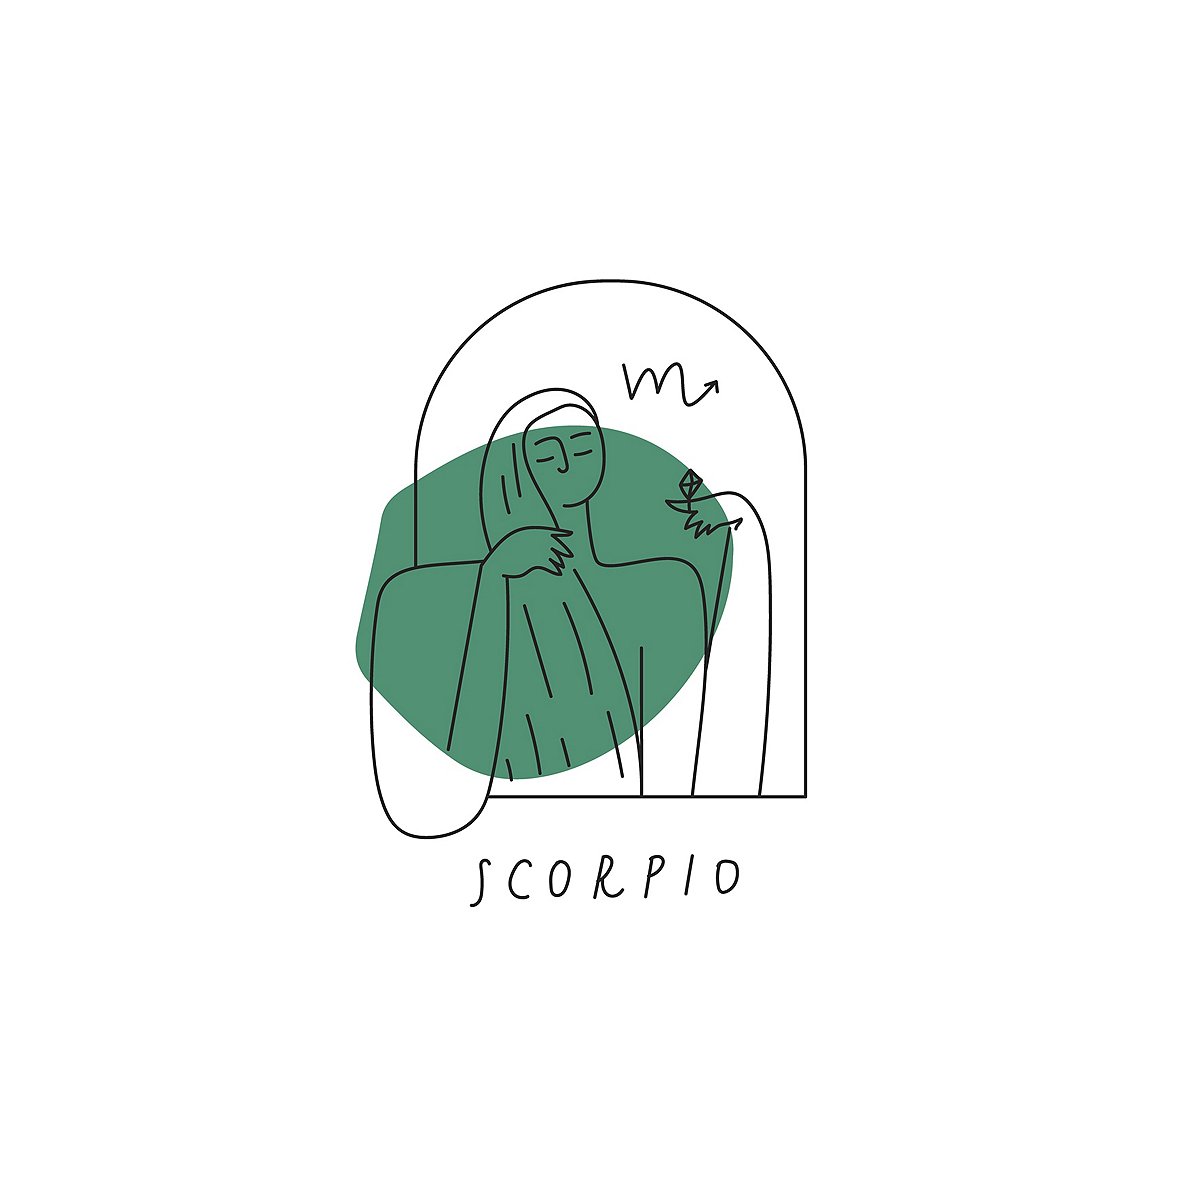 Scorpio Zodiac Image